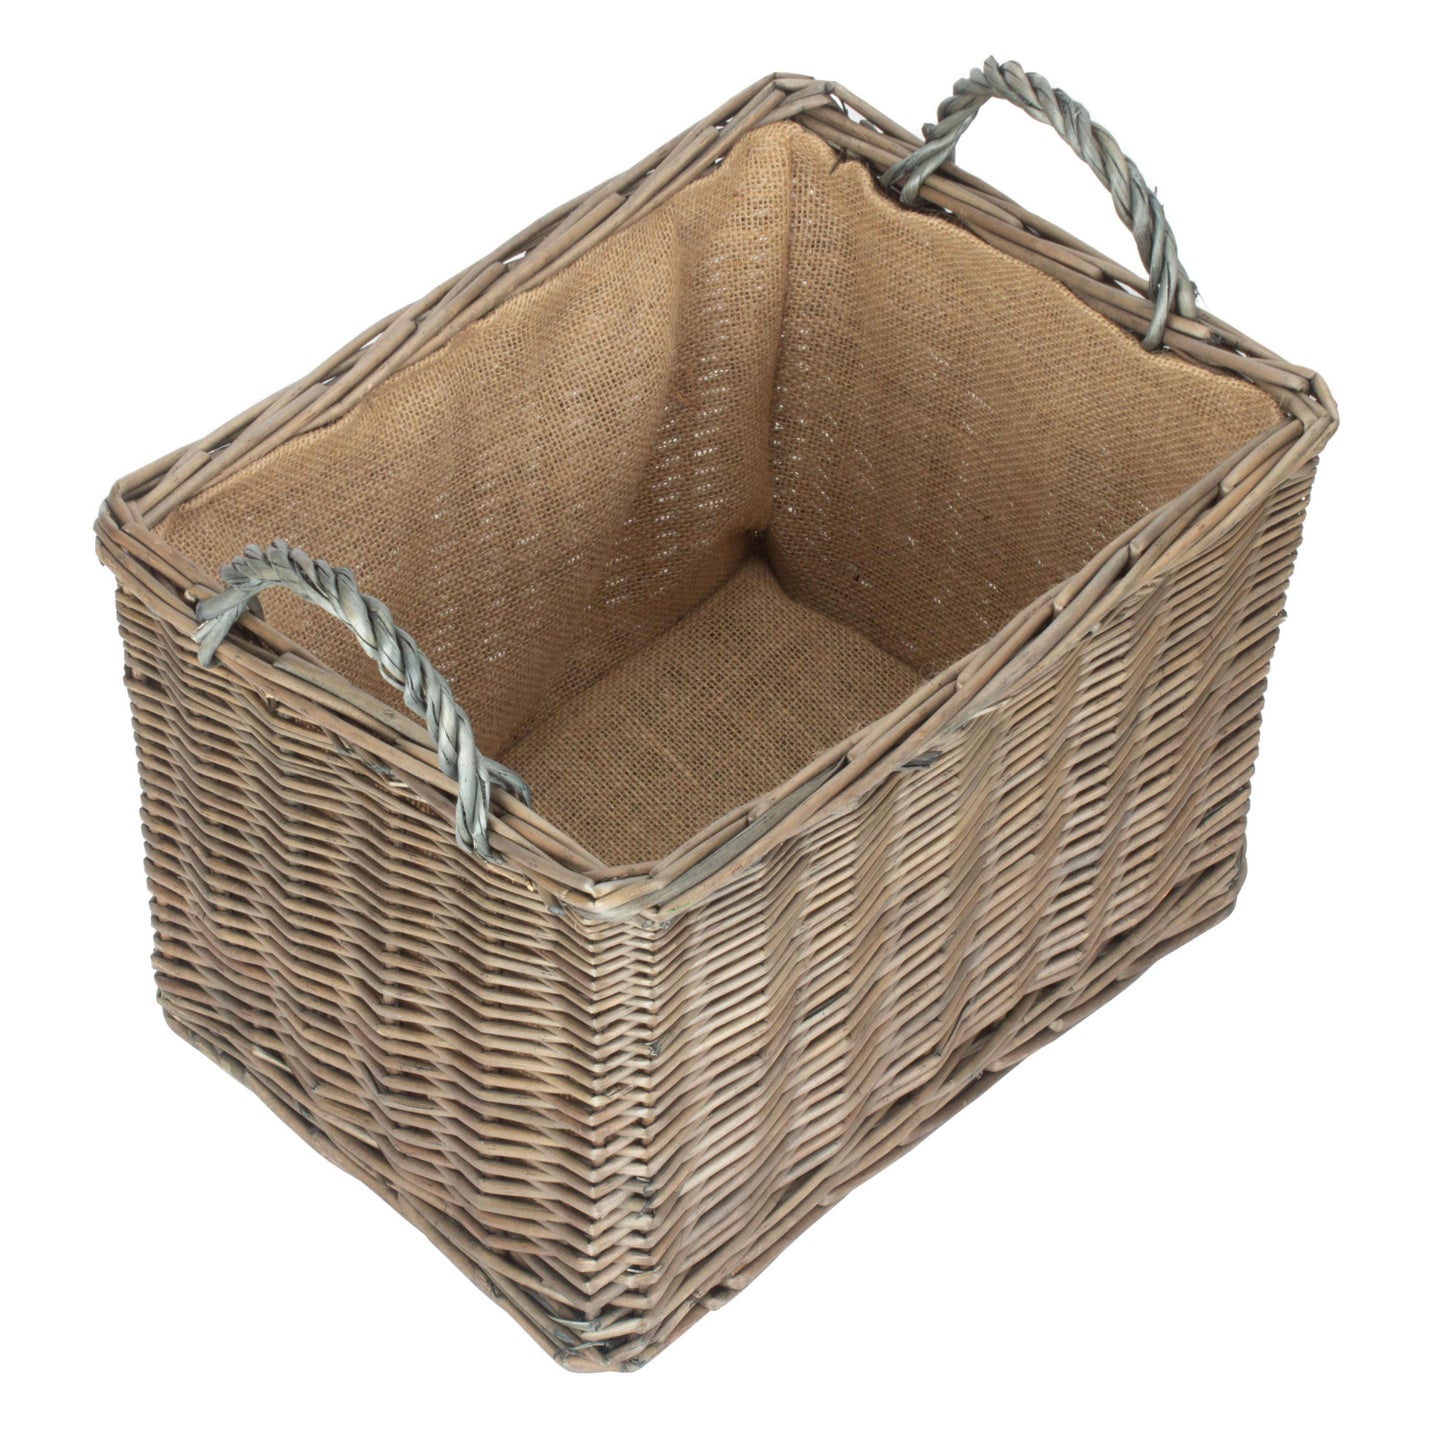 Kindling Wood Basket